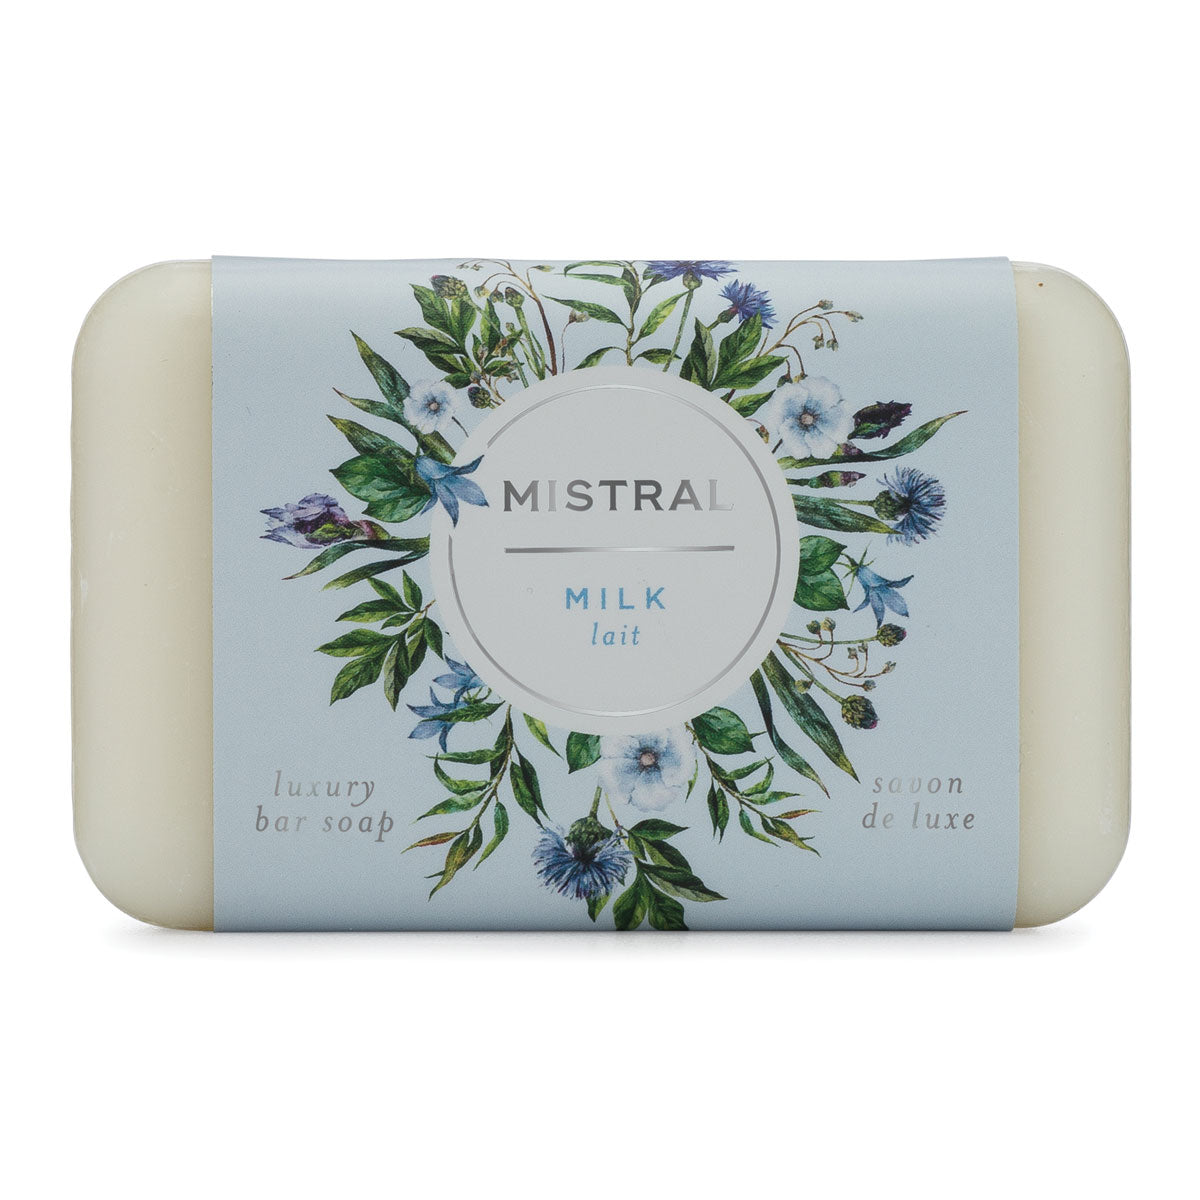 Mistral Classic Milk lait Soap 7oz Bar